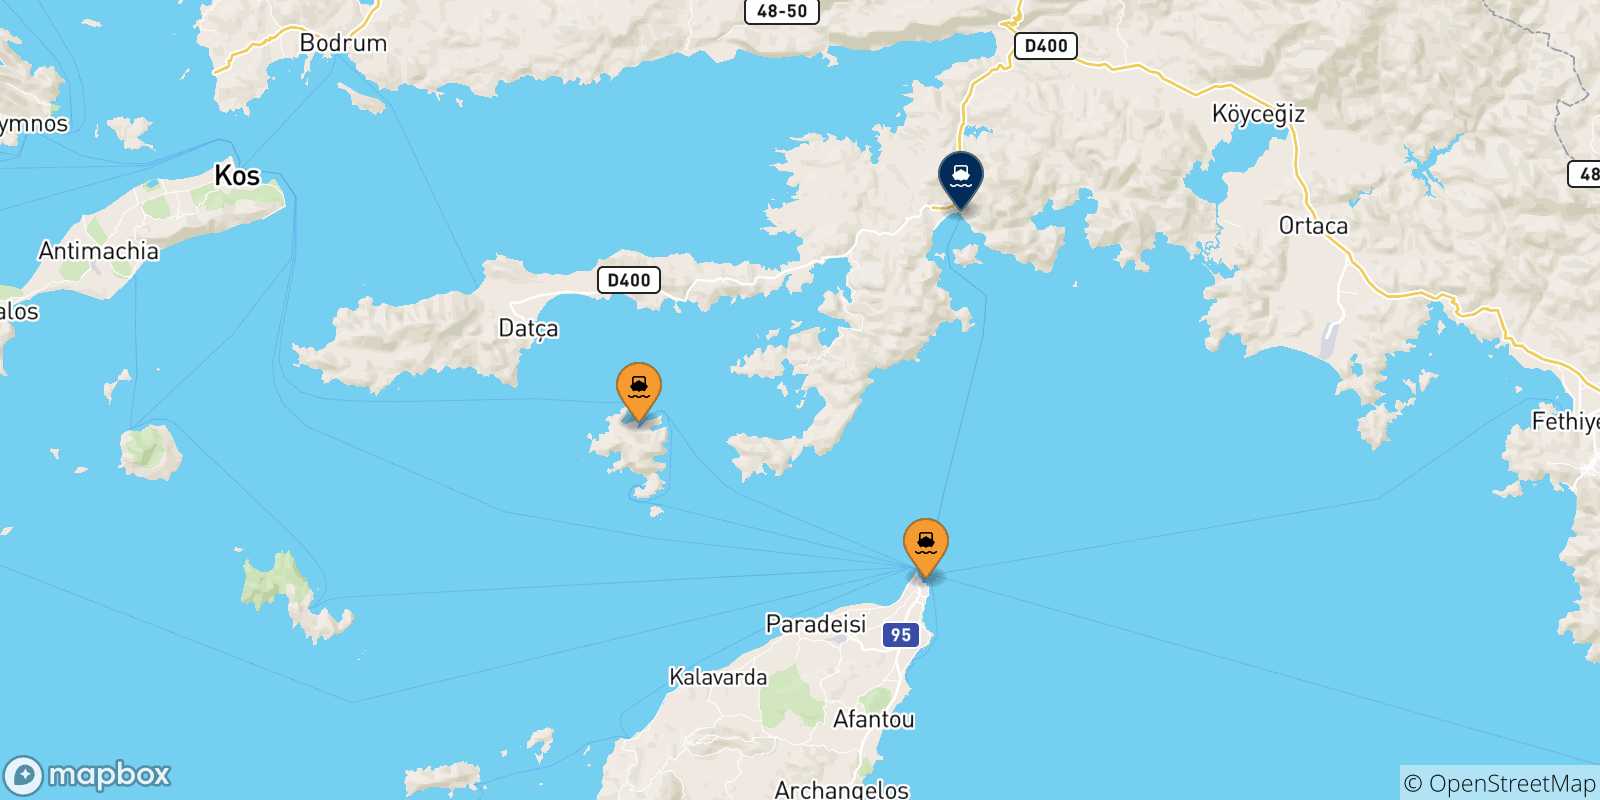 Mappa delle possibili rotte tra le Isole Dodecaneso e Marmaris